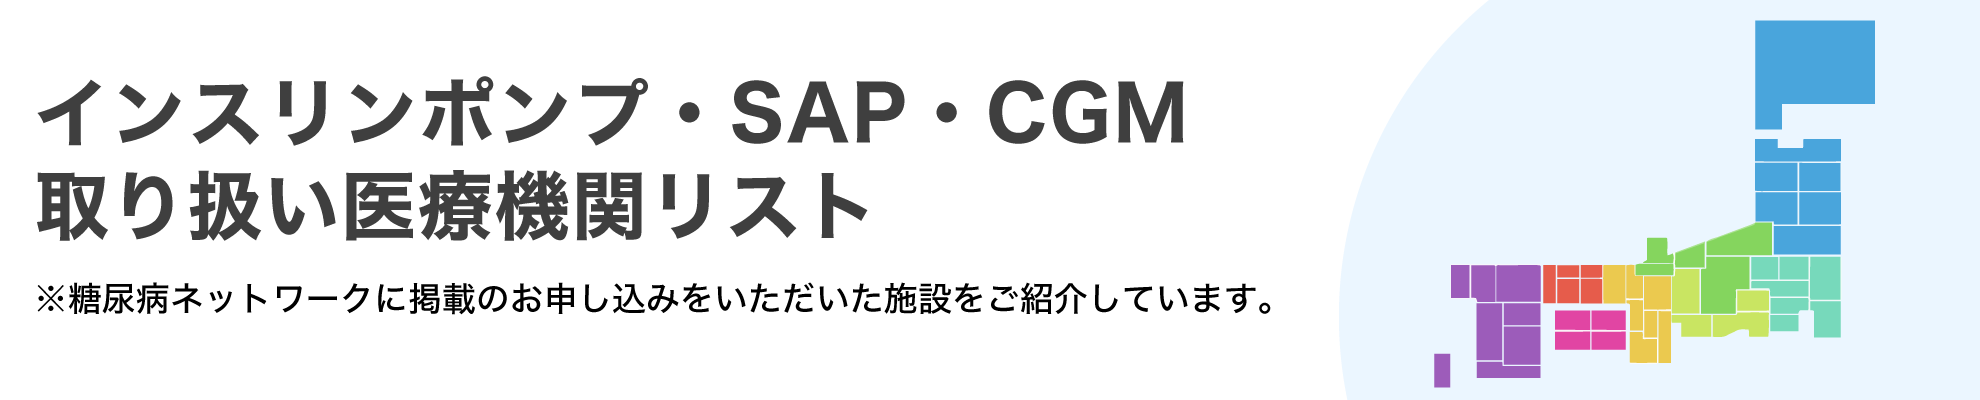 インスリンポンプ・SAP・CGM取り扱い医療機関リスト_pc